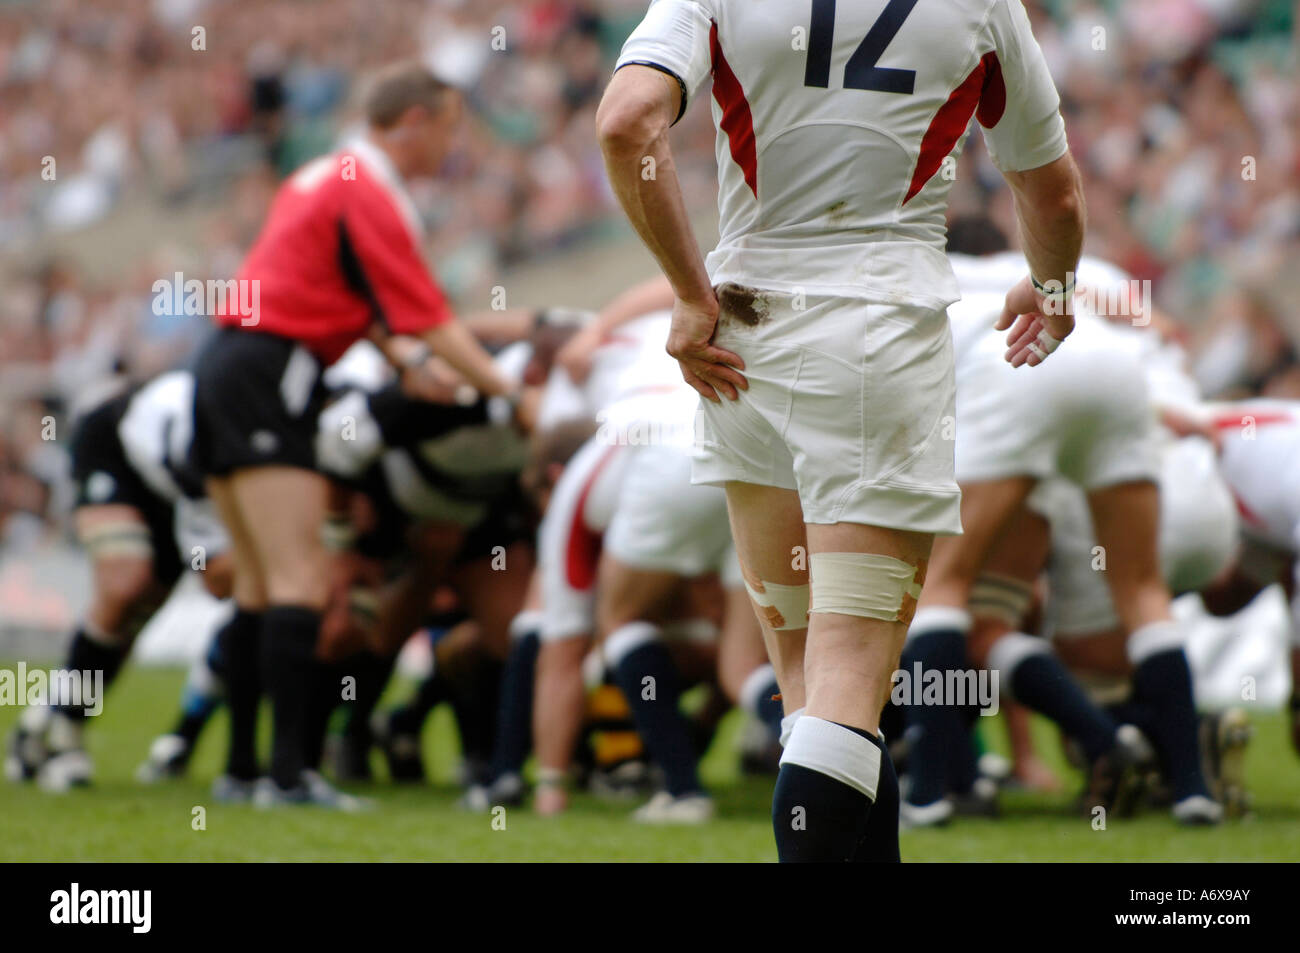 Un joueur de rugby Angleterre essuyant ses mains lorsqu'il est en cours d'une mêlée Banque D'Images